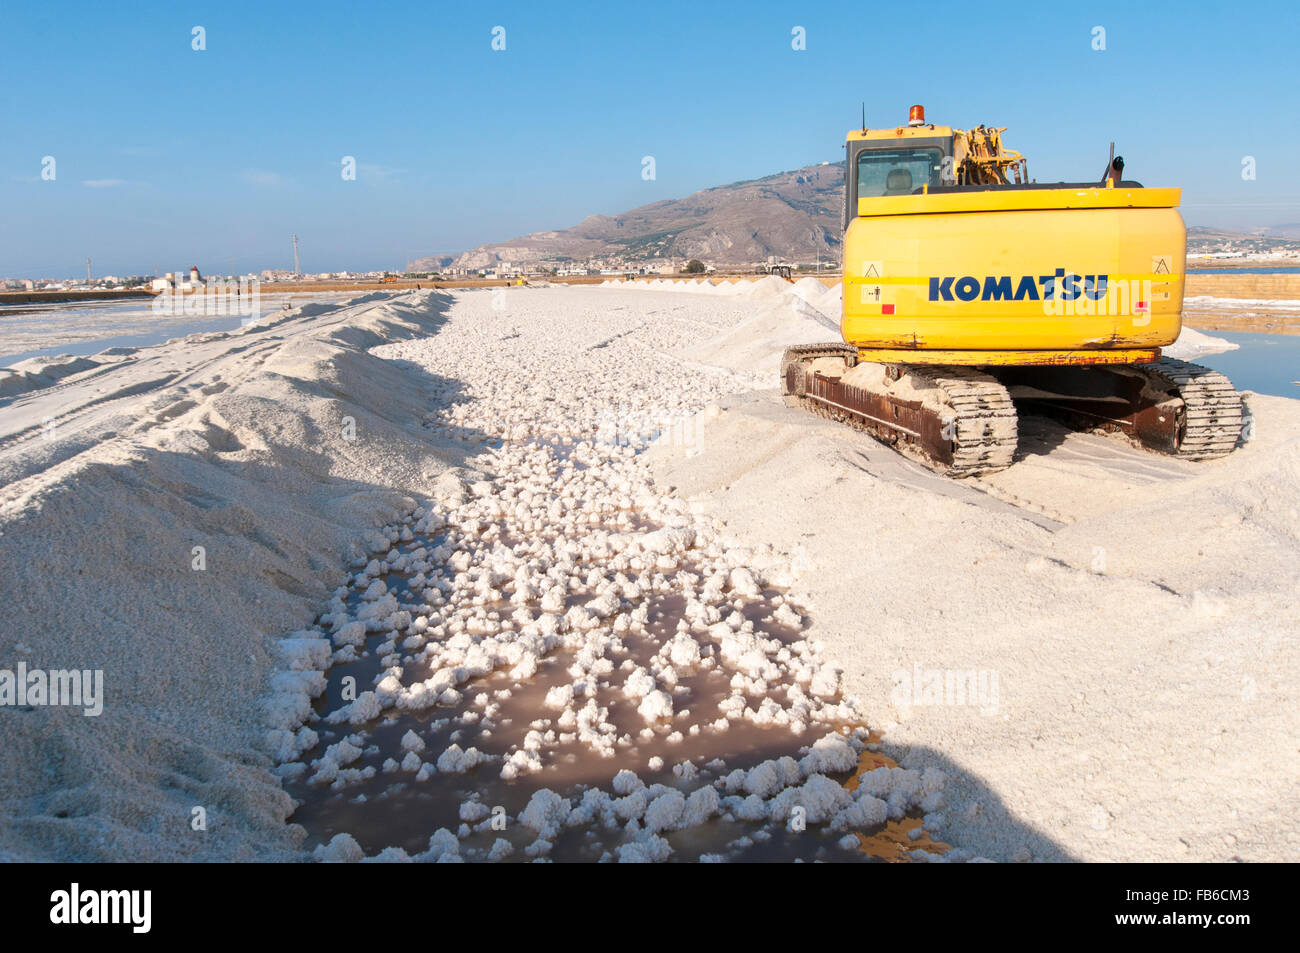 L'Italia, Sicilia, Trapani. La Komatsu escavatore cingolato di raccolta del sale del mare da un laghetto di evaporazione. Foto Stock